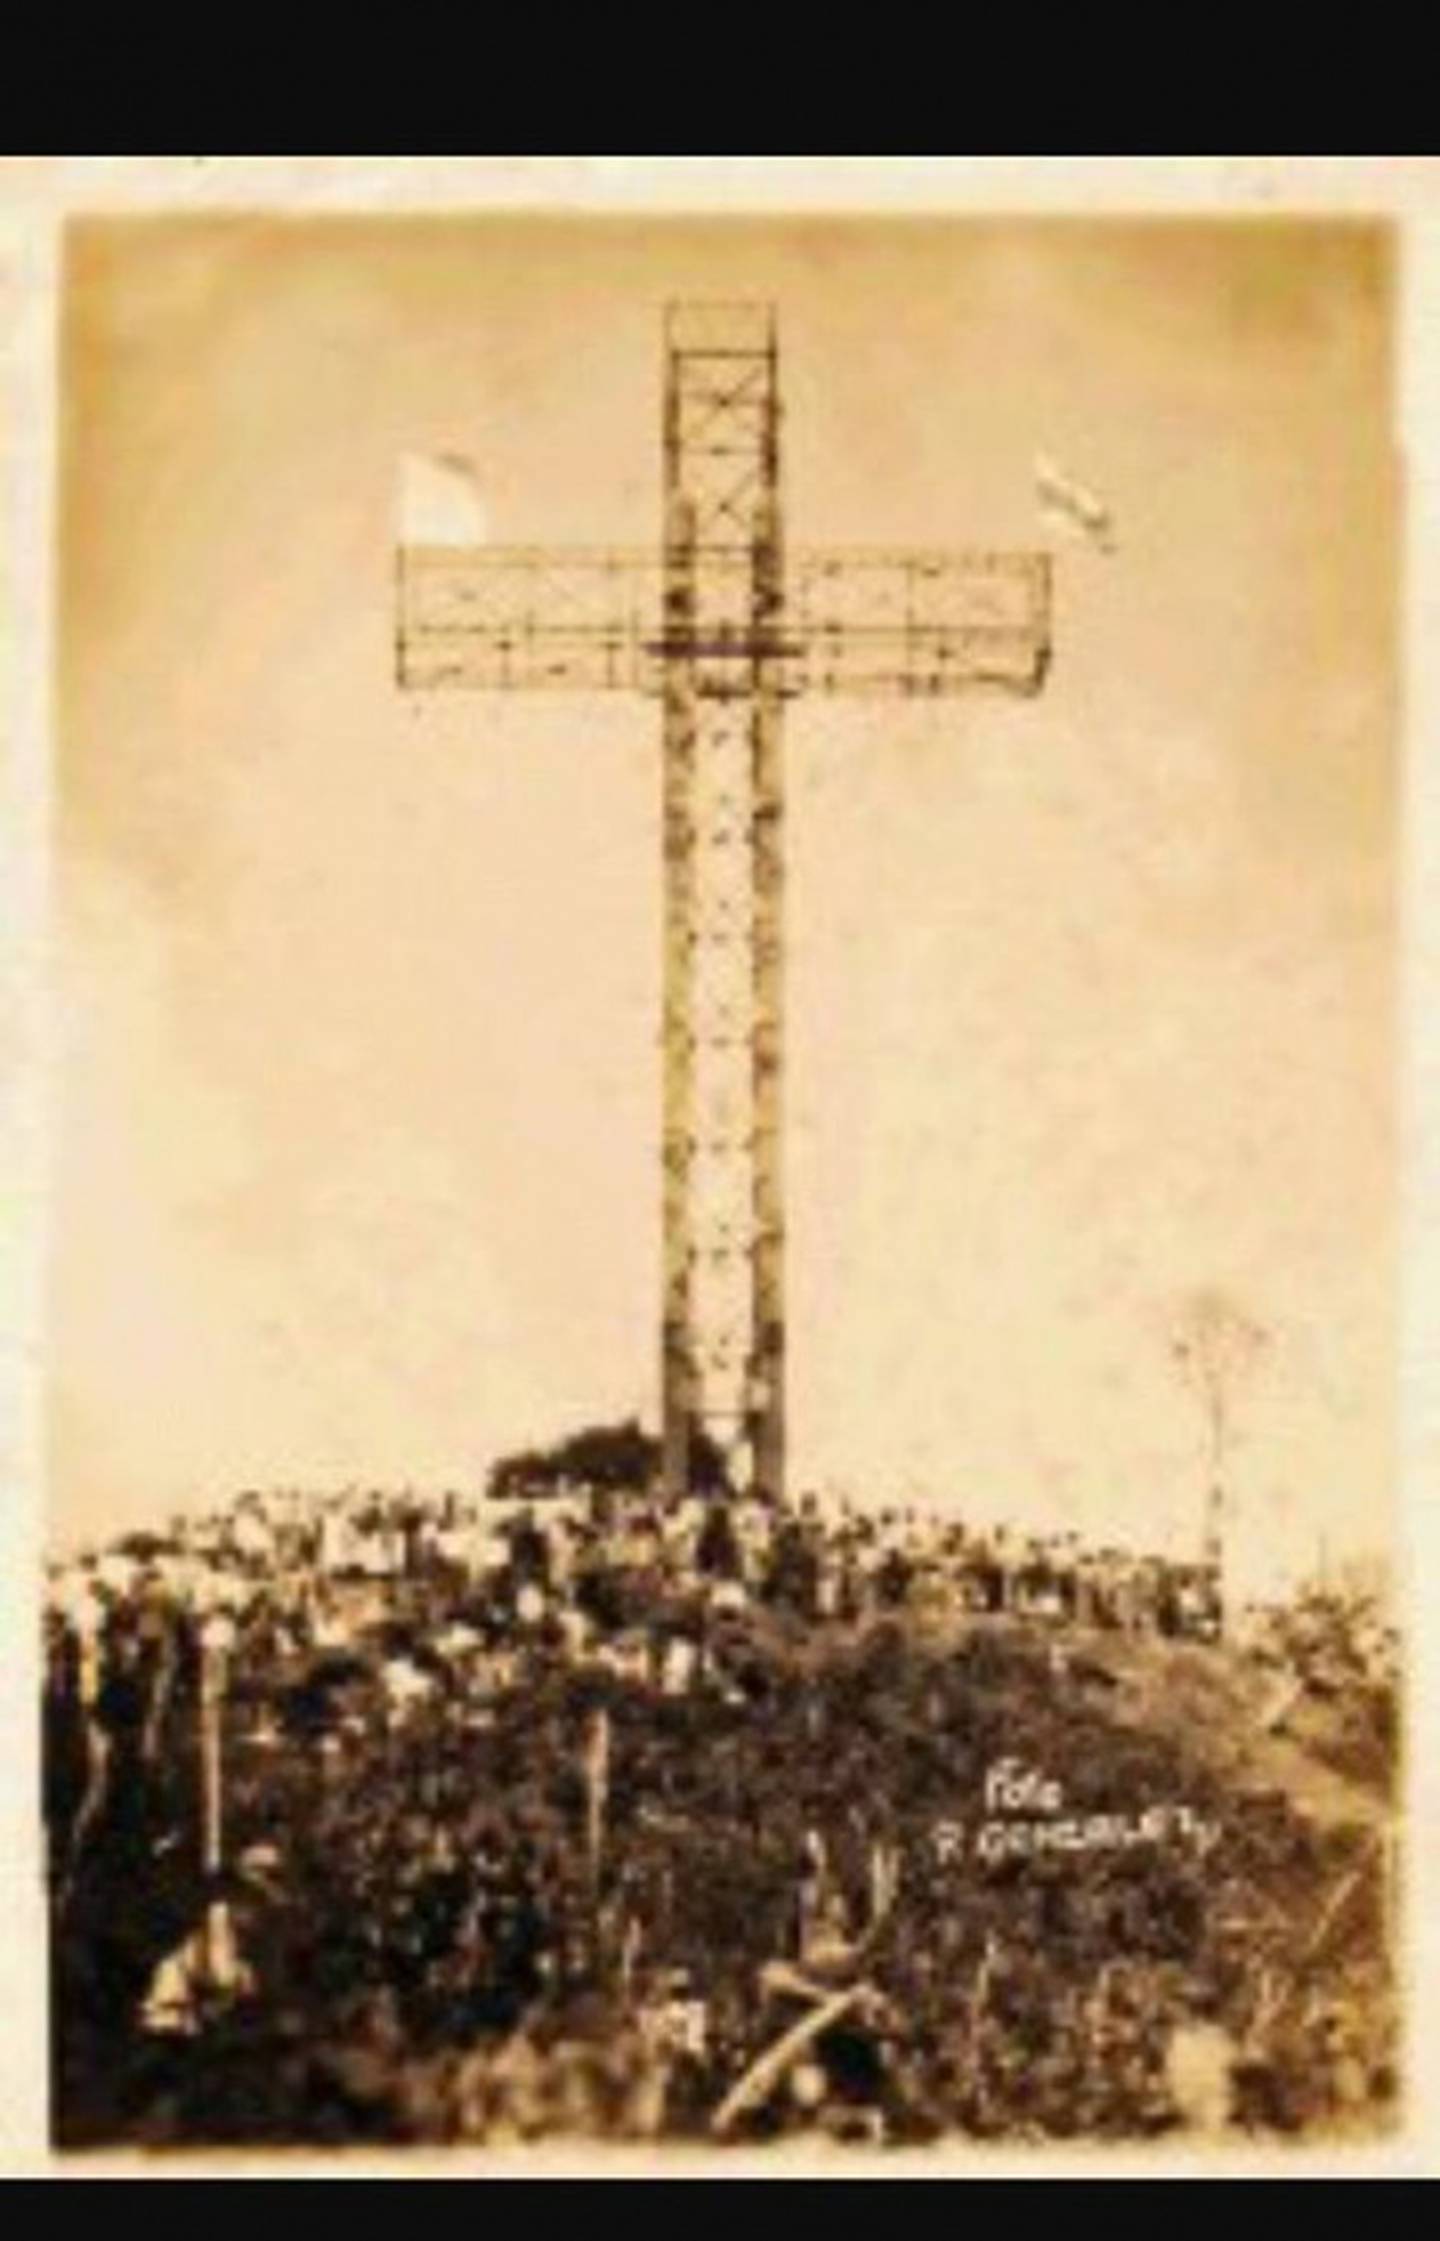 La cruz alajueliteña está ubicada en el cerro San Miguel, a 2.036 metros sobre el nivel del mar. Mide 26 metros de alto y tiene 11 metros de ancho, su base es de concreto; mide 5,50 metros de lado y 3,50 metros de profundidad. Fue inaugurada el 8 de julio de 1934 por el sacerdote Rosendo Valenciano.